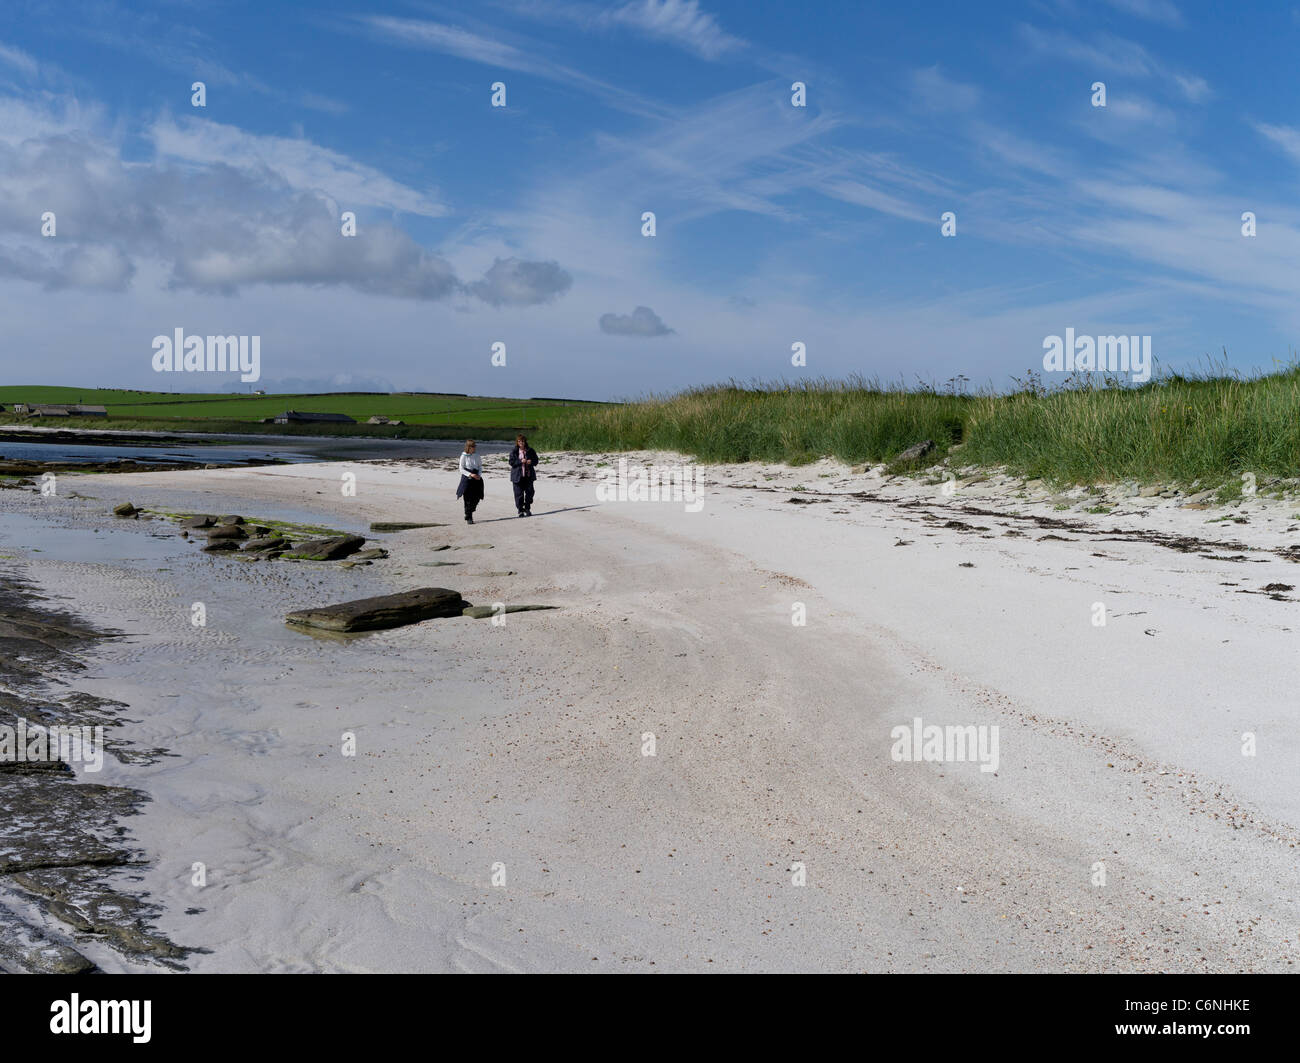 dh South Wick PAPA WESTRAY ORKNEY turistas pareja caminando a lo largo playa de arena blanca escocia reino unido caminar islas mujeres playas Foto de stock